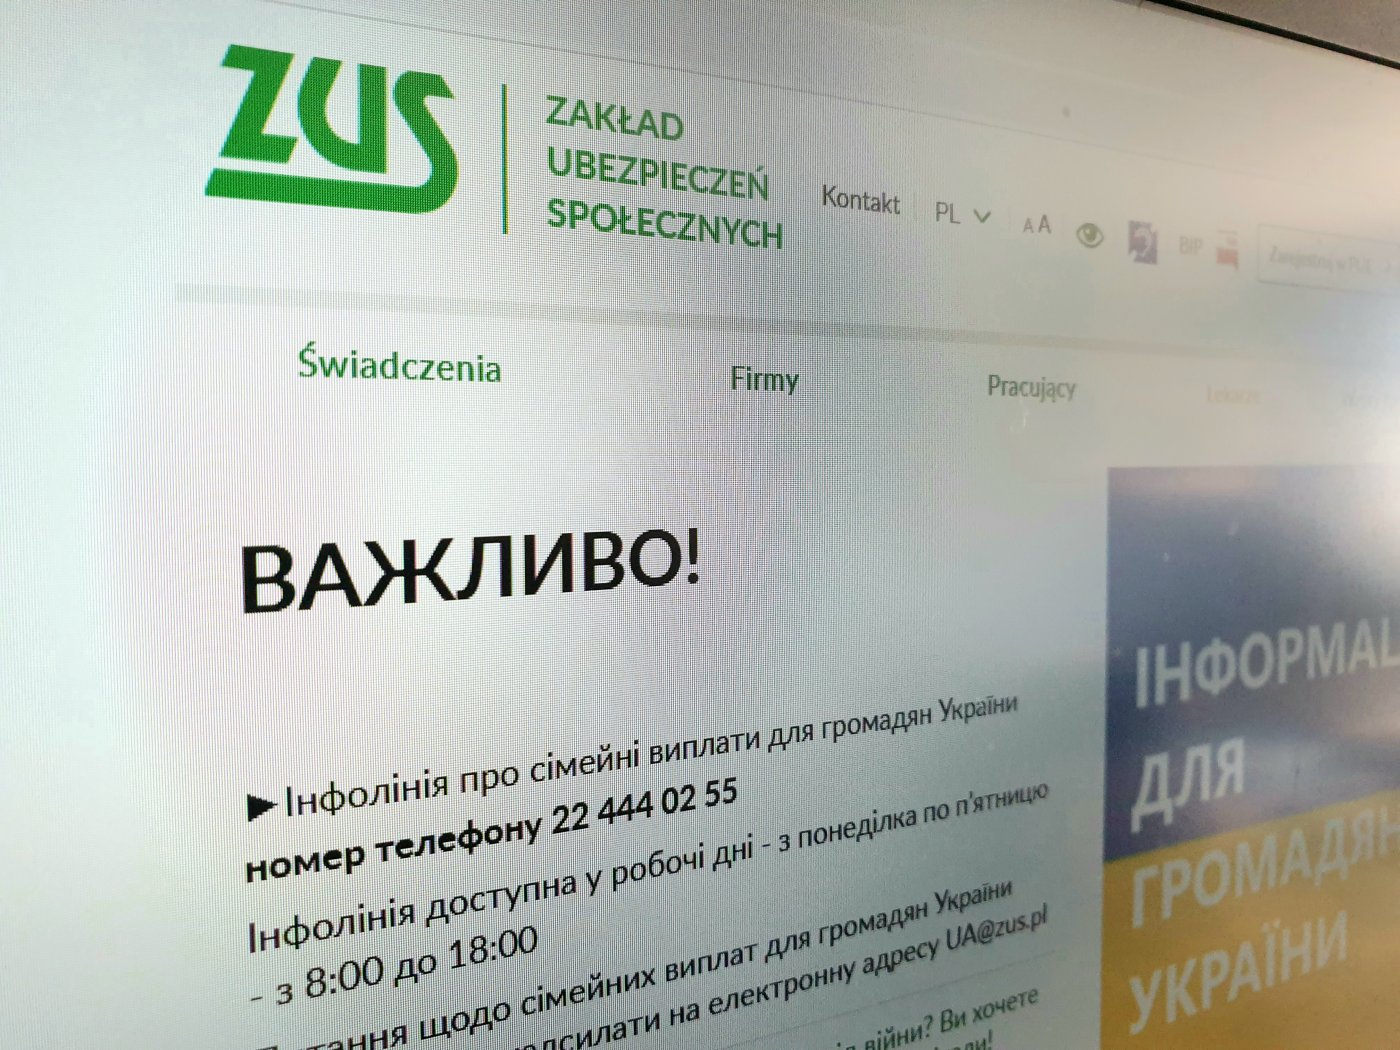 Monitor laptopa, na ekranie strona internetowa www.zus.pl